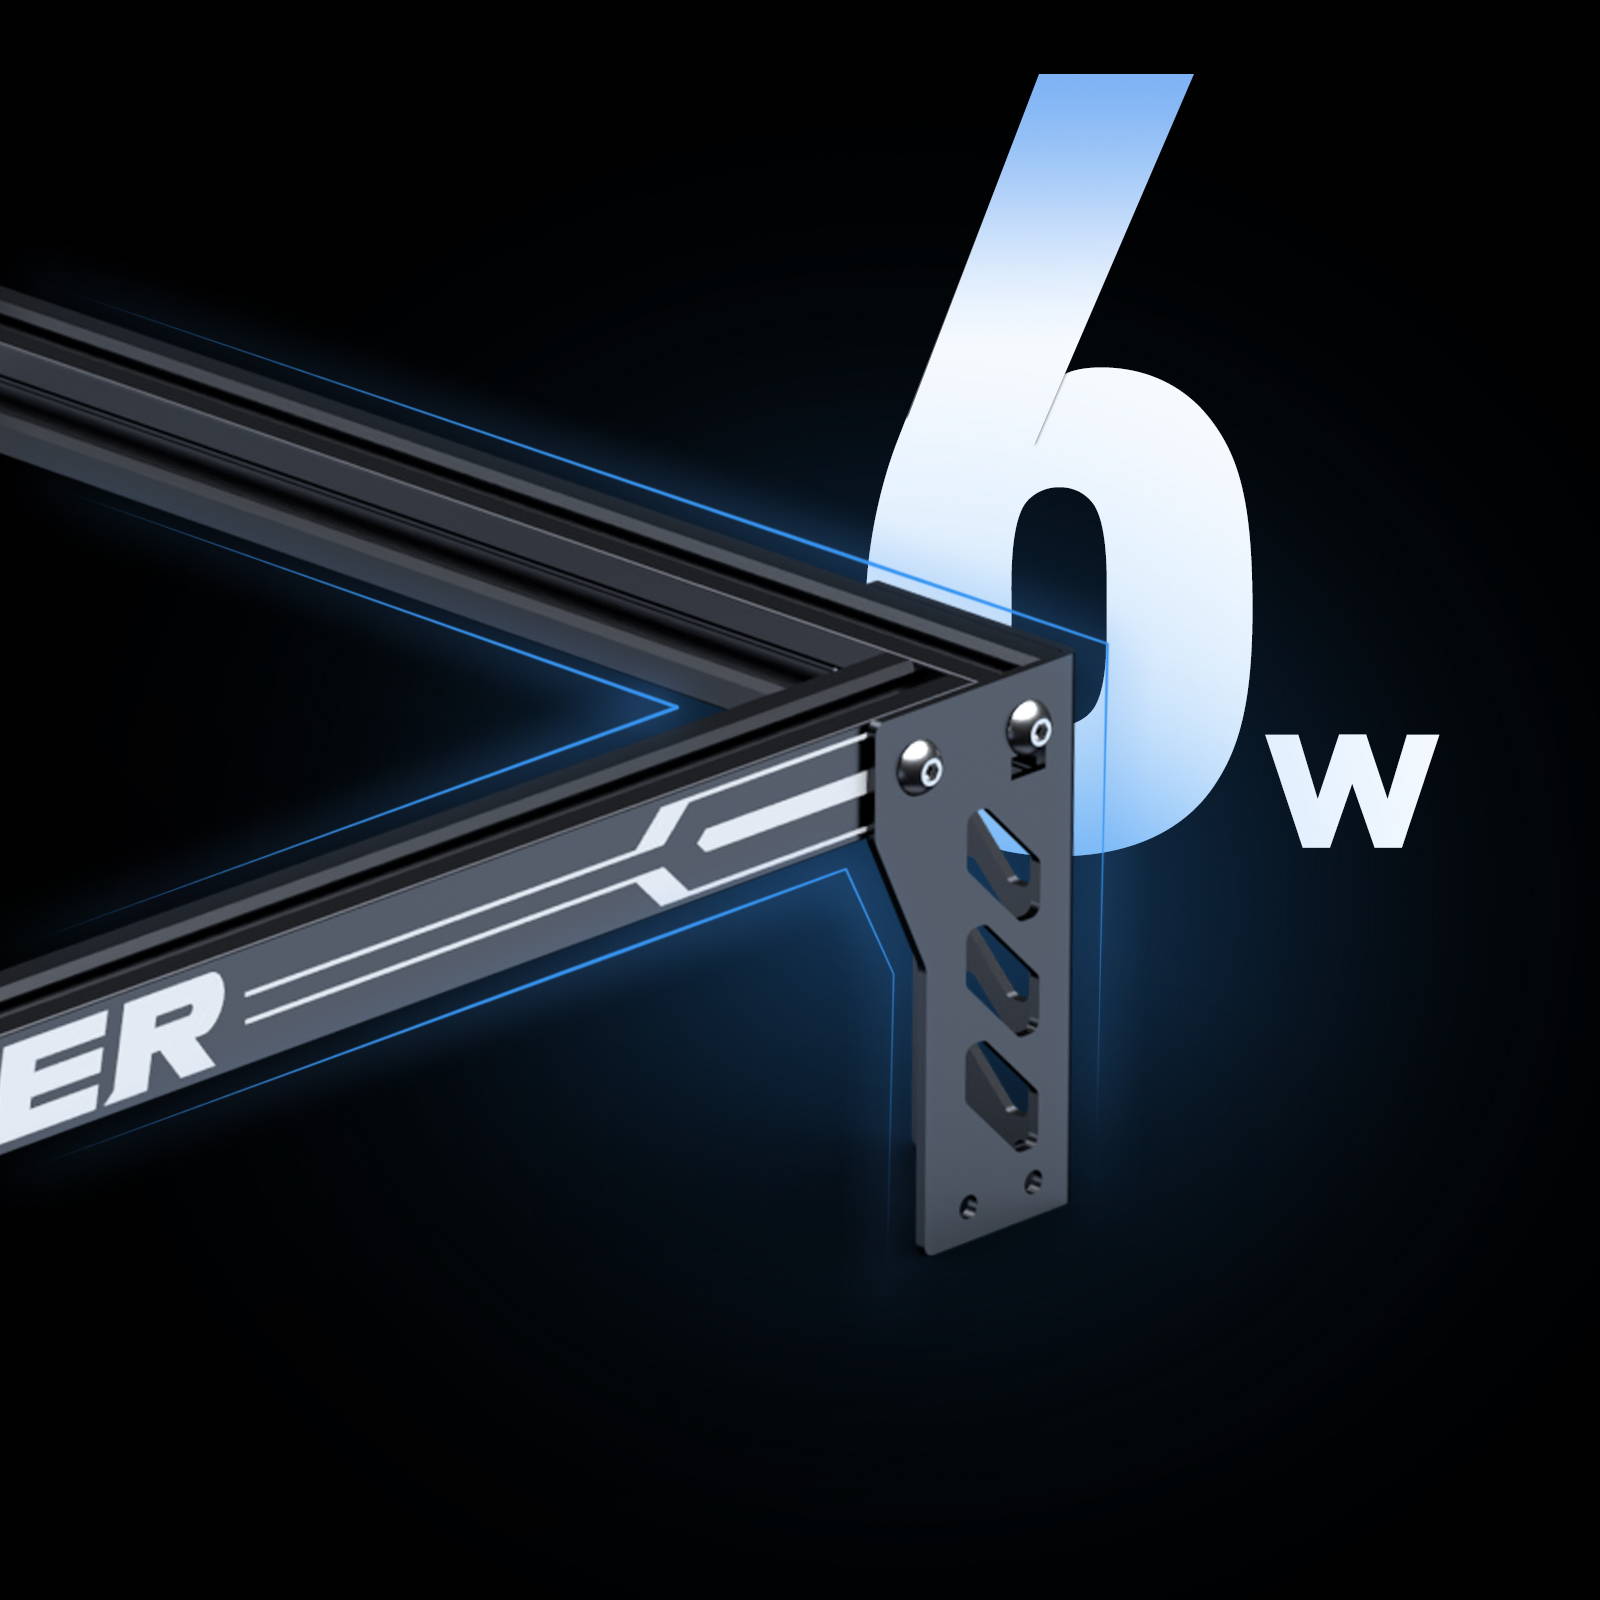 ACMER P1 S Pro 6W Laser Engraver Machine